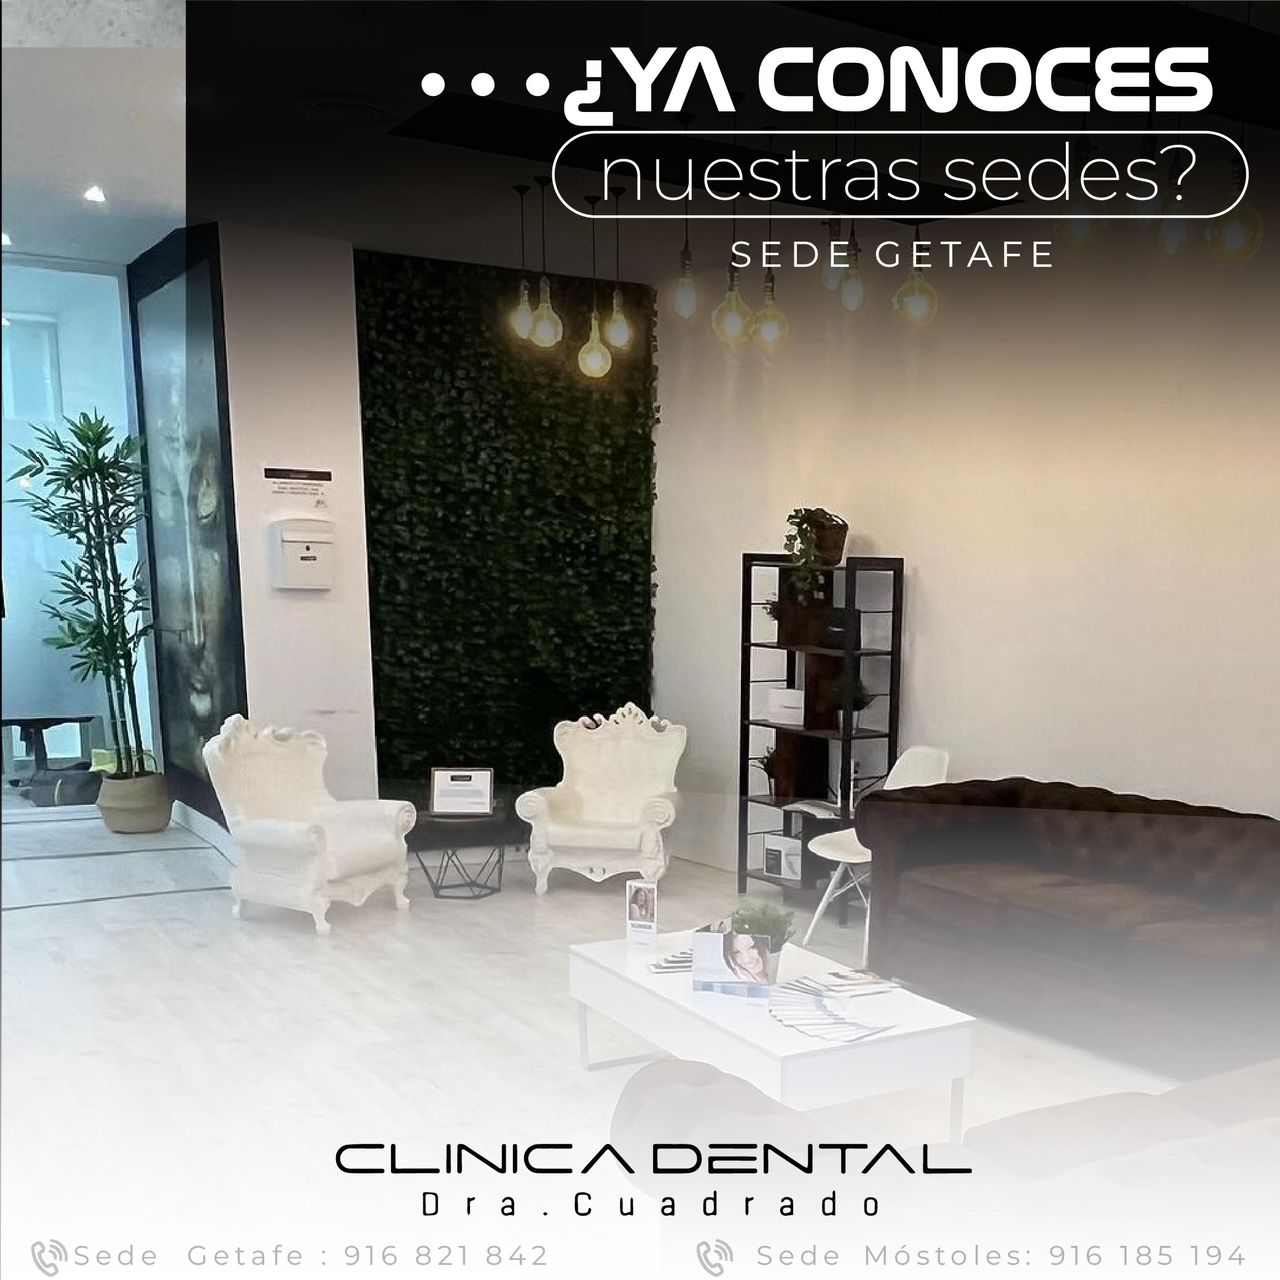 ¡La Clínica Dental Dra. Cuadrado en Getafe es tu destino ideal para el cuidado dental de calidad!